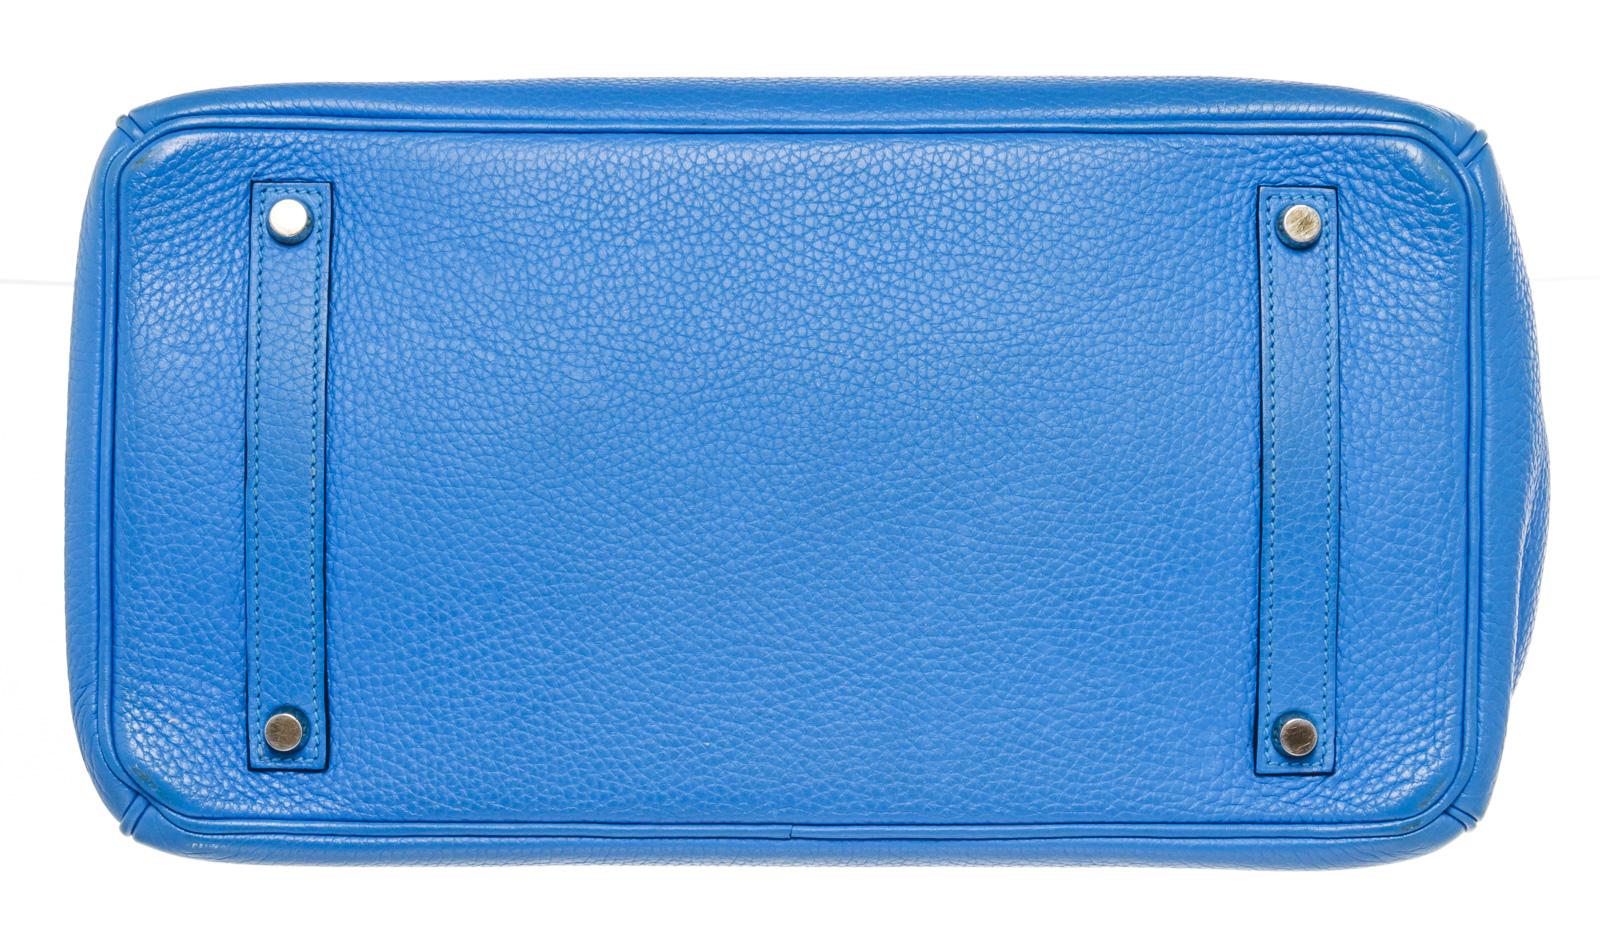 Hermes Blue Toge Leather Birkin 35cm Shoulder Bag 2